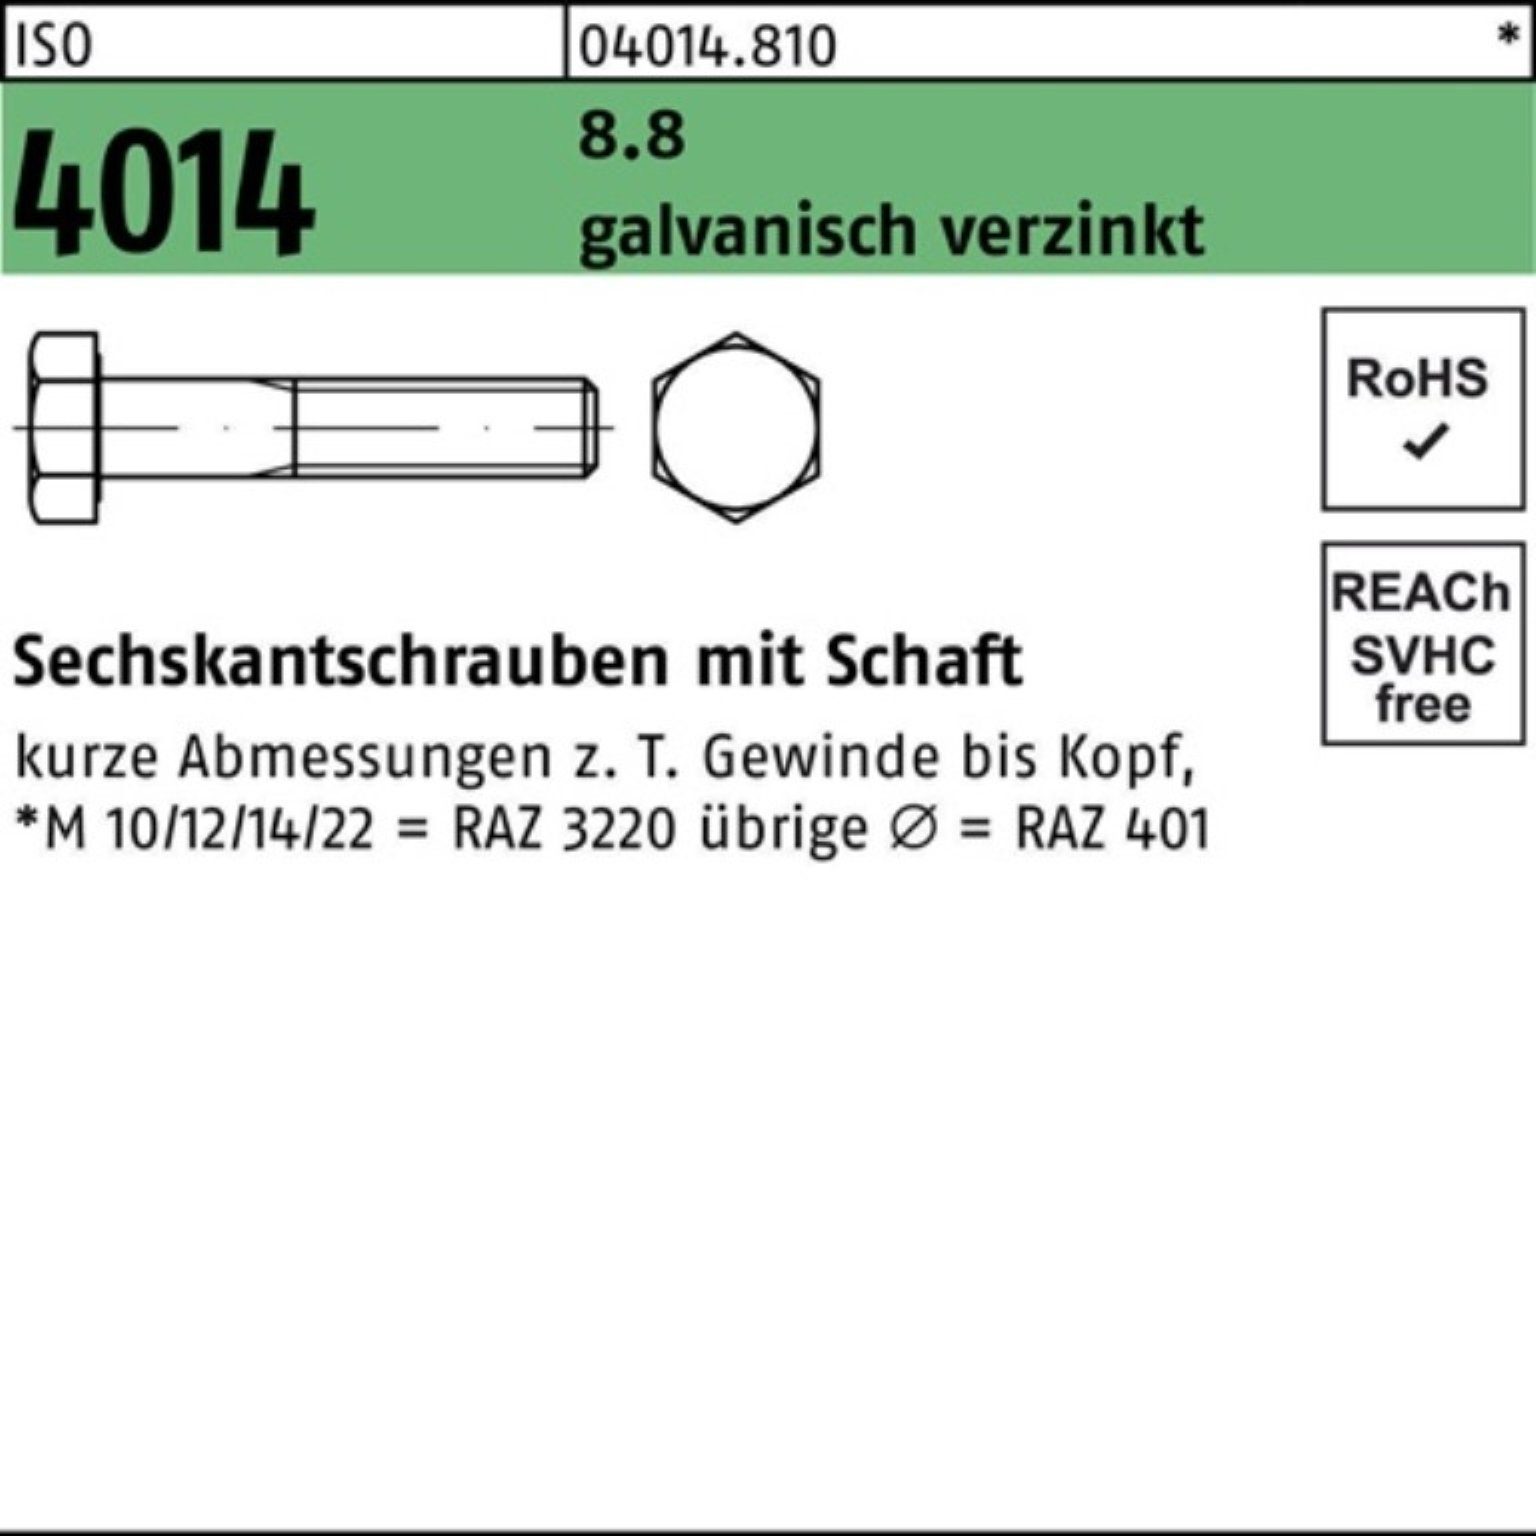 Bufab Sechskantschraube 500 M4x Sechskantschraube 35 Schaft 500er galv.verz. 8.8 Pack 4014 ISO